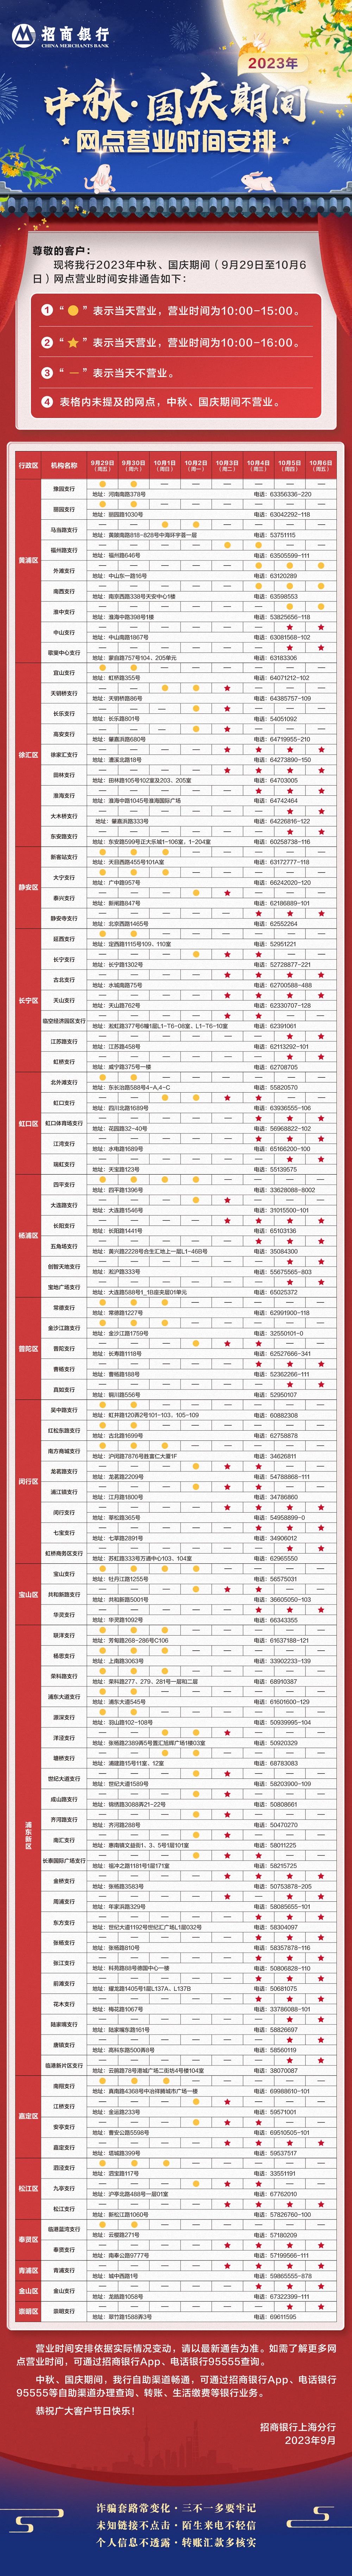 2023年中秋、國慶節期間上海分行網點營業時間安排長圖 (1).jpg